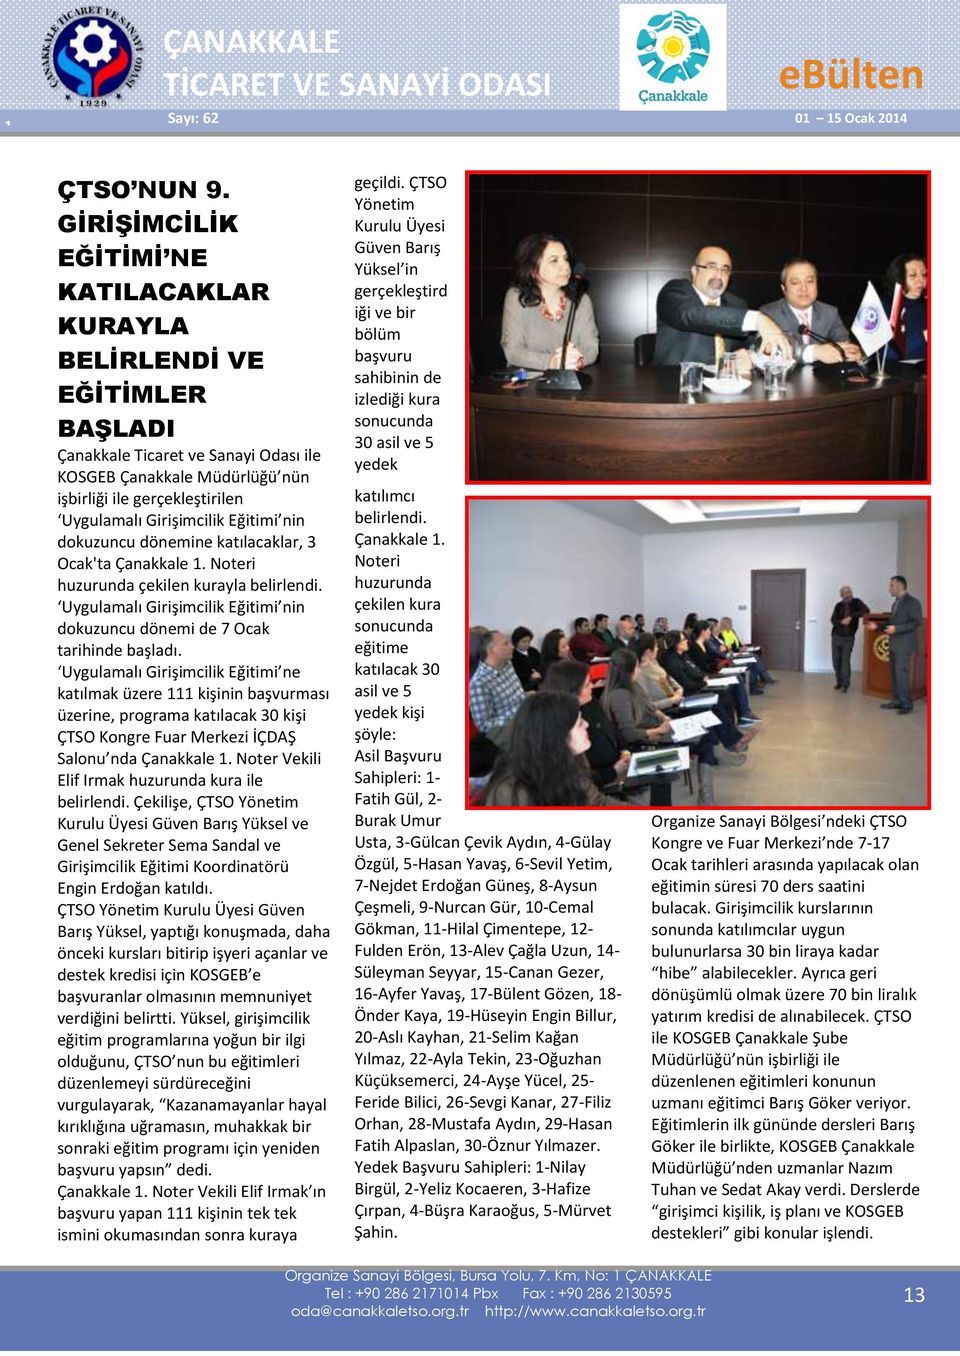 Girişimcilik Eğitimi nin dokuzuncu dönemine katılacaklar, 3 Ocak'ta Çanakkale 1. Noteri huzurunda çekilen kurayla belirlendi.